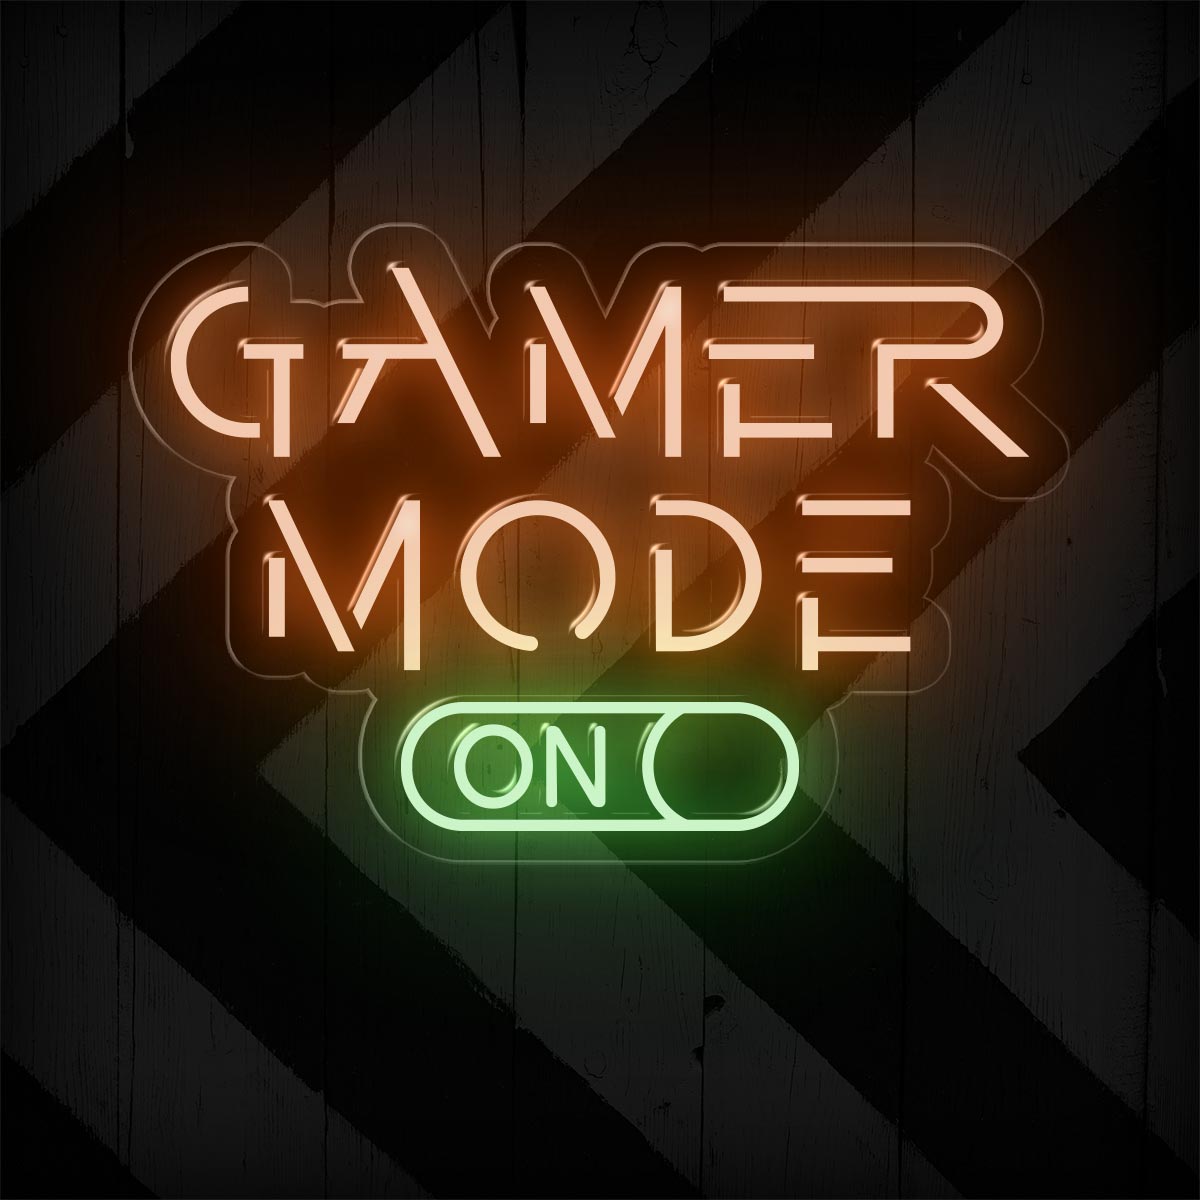 Gamer Mode On LED Neon Sign | Gaming Room Lights Decor - NEONXPERT